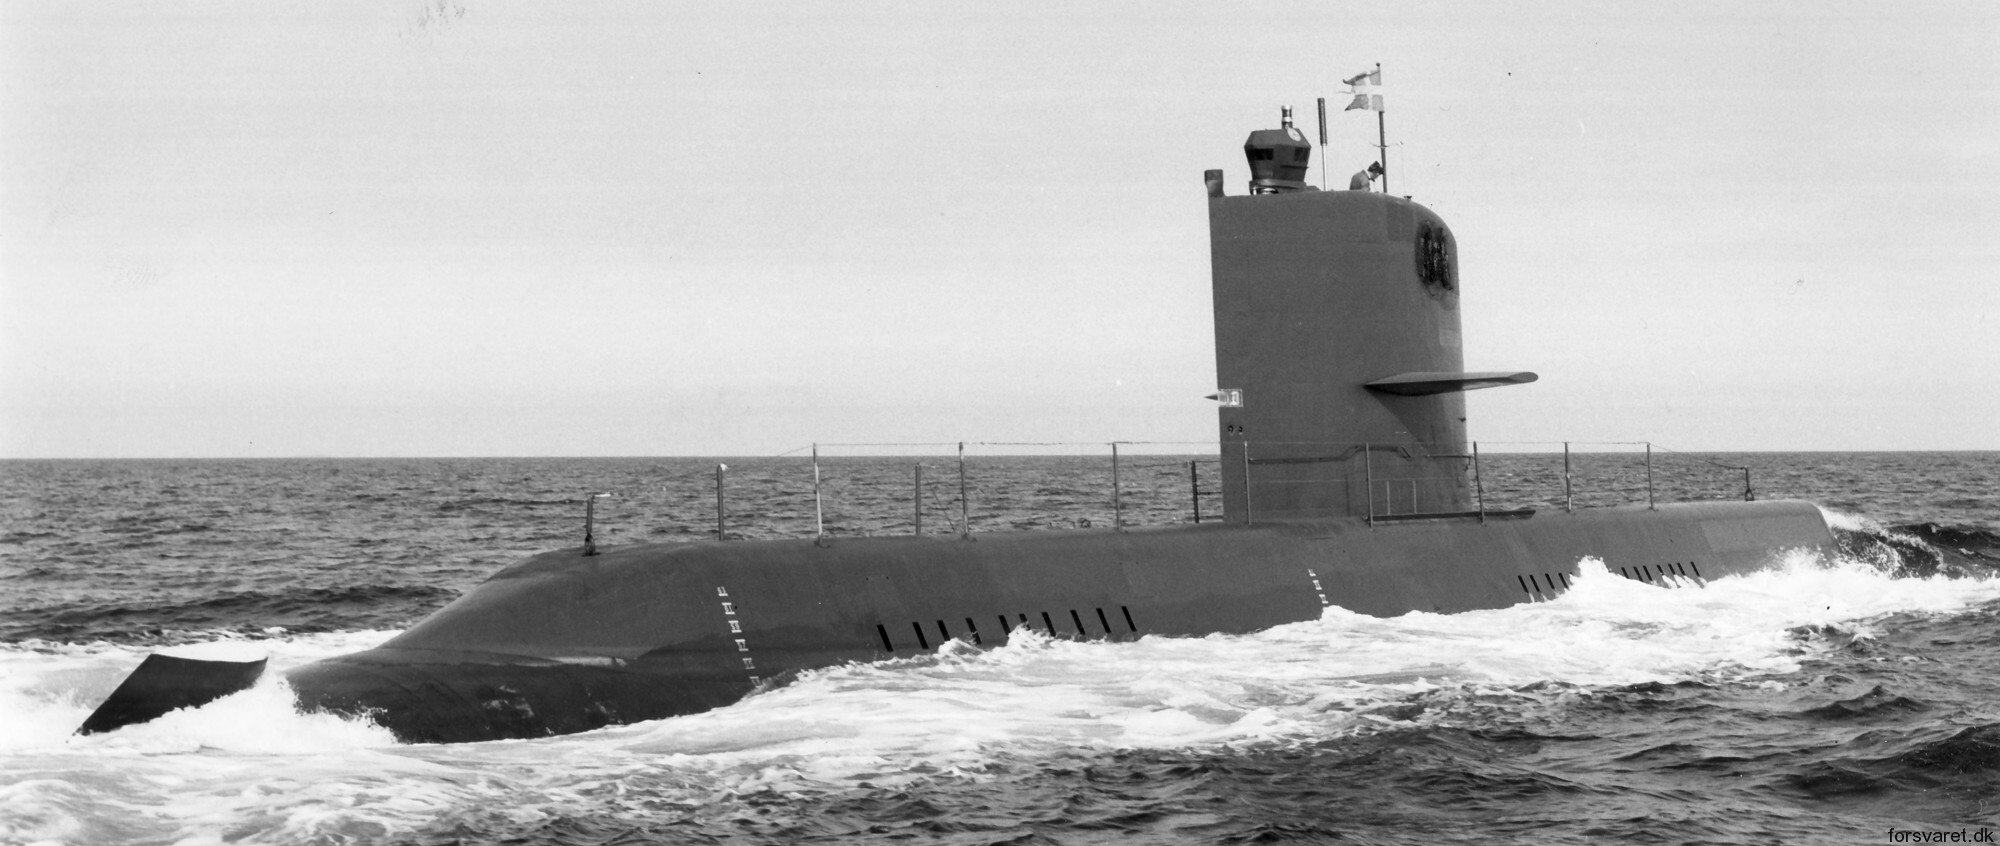 hswms hms nacken näk a14 class submarine ssk swedish navy svenska marinen försvarsmakten kockums 04